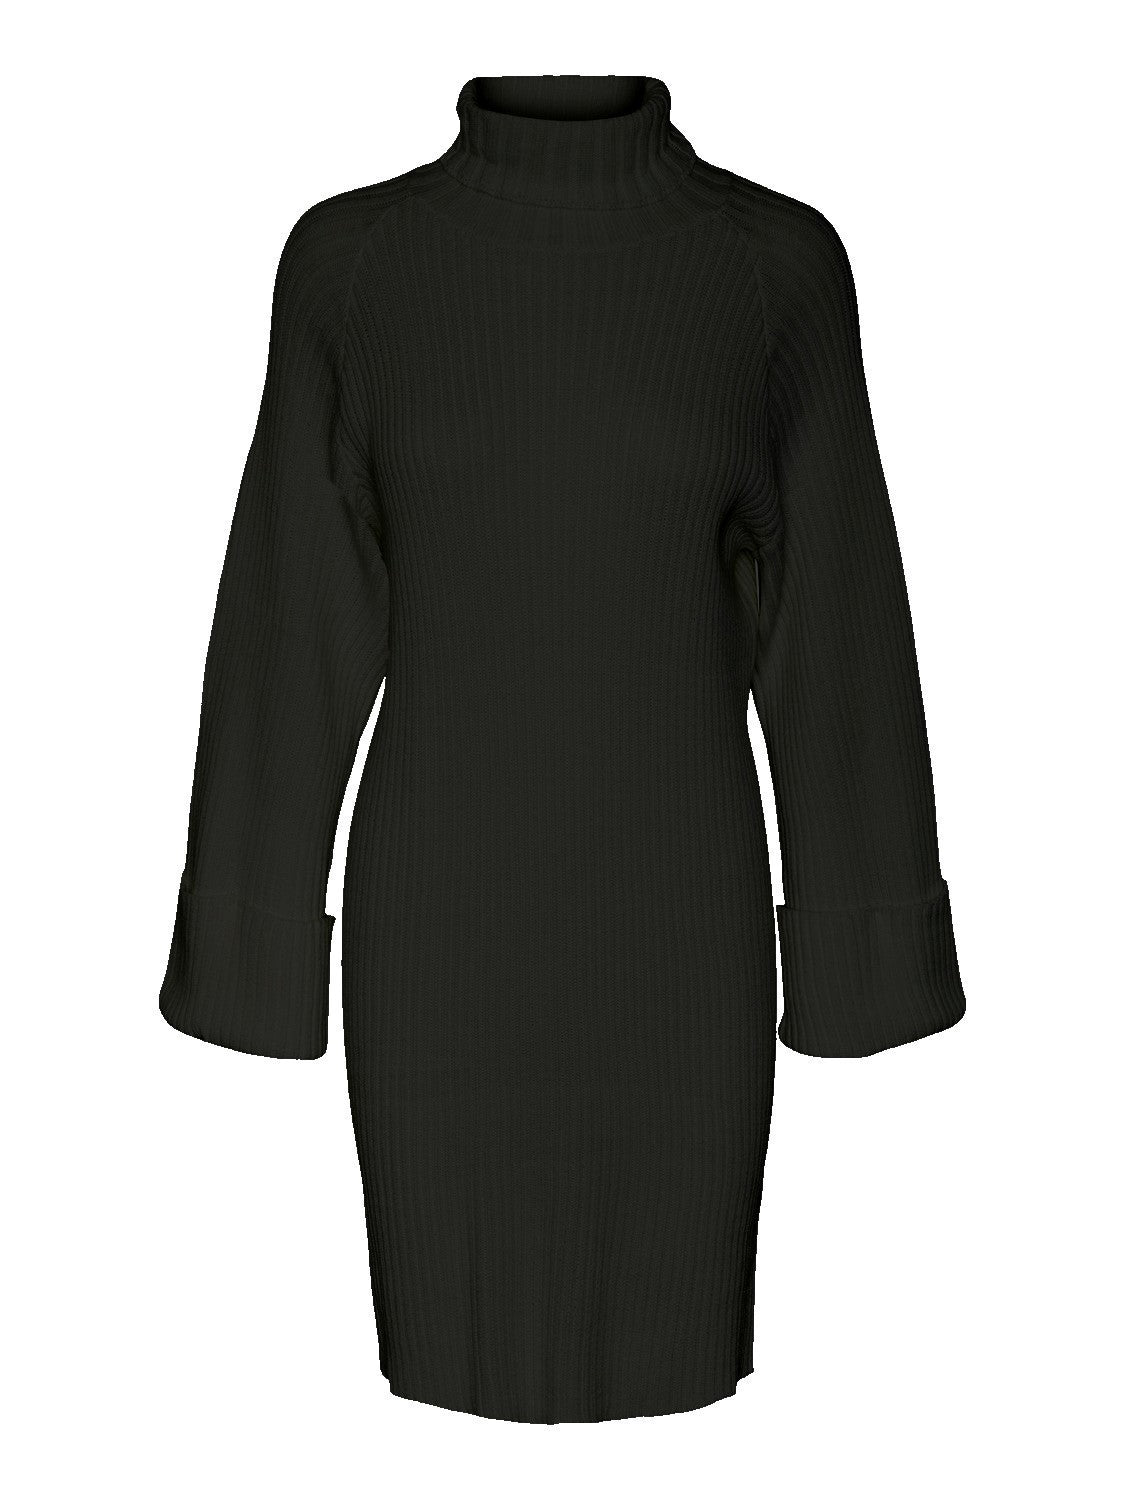 YASMAVI Dress - Black